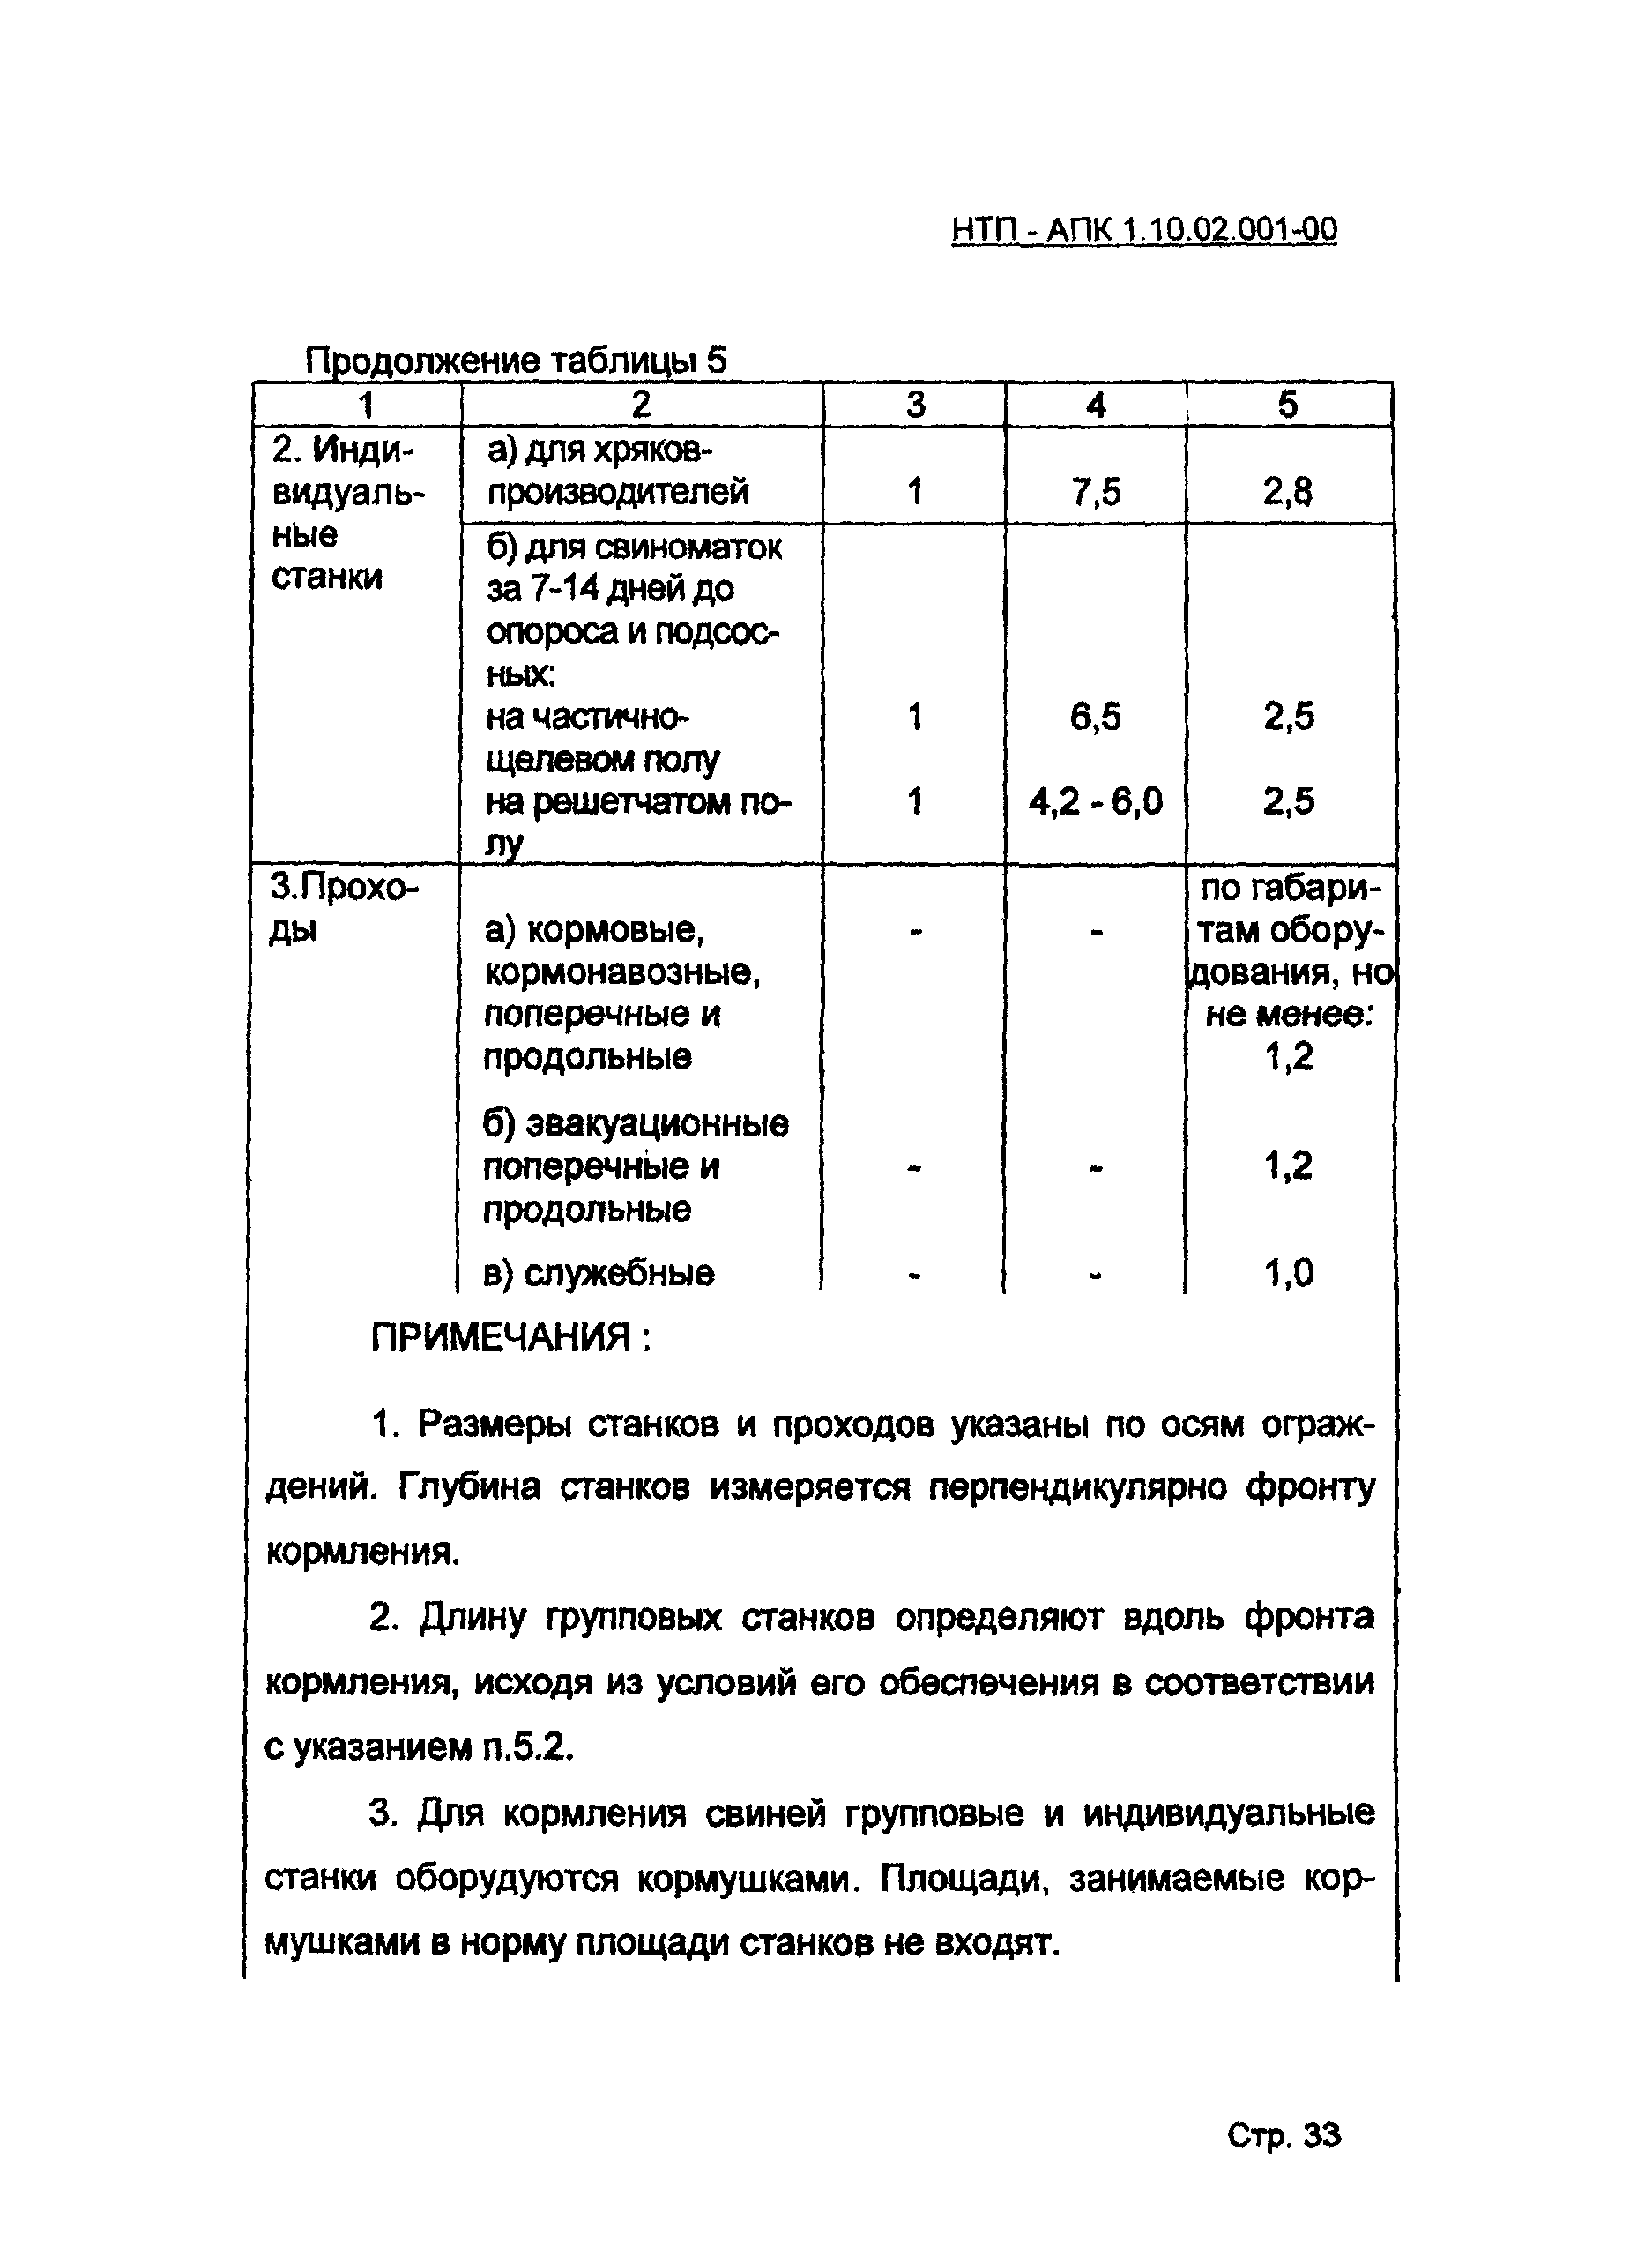 НТП АПК 1.10.02.001-00